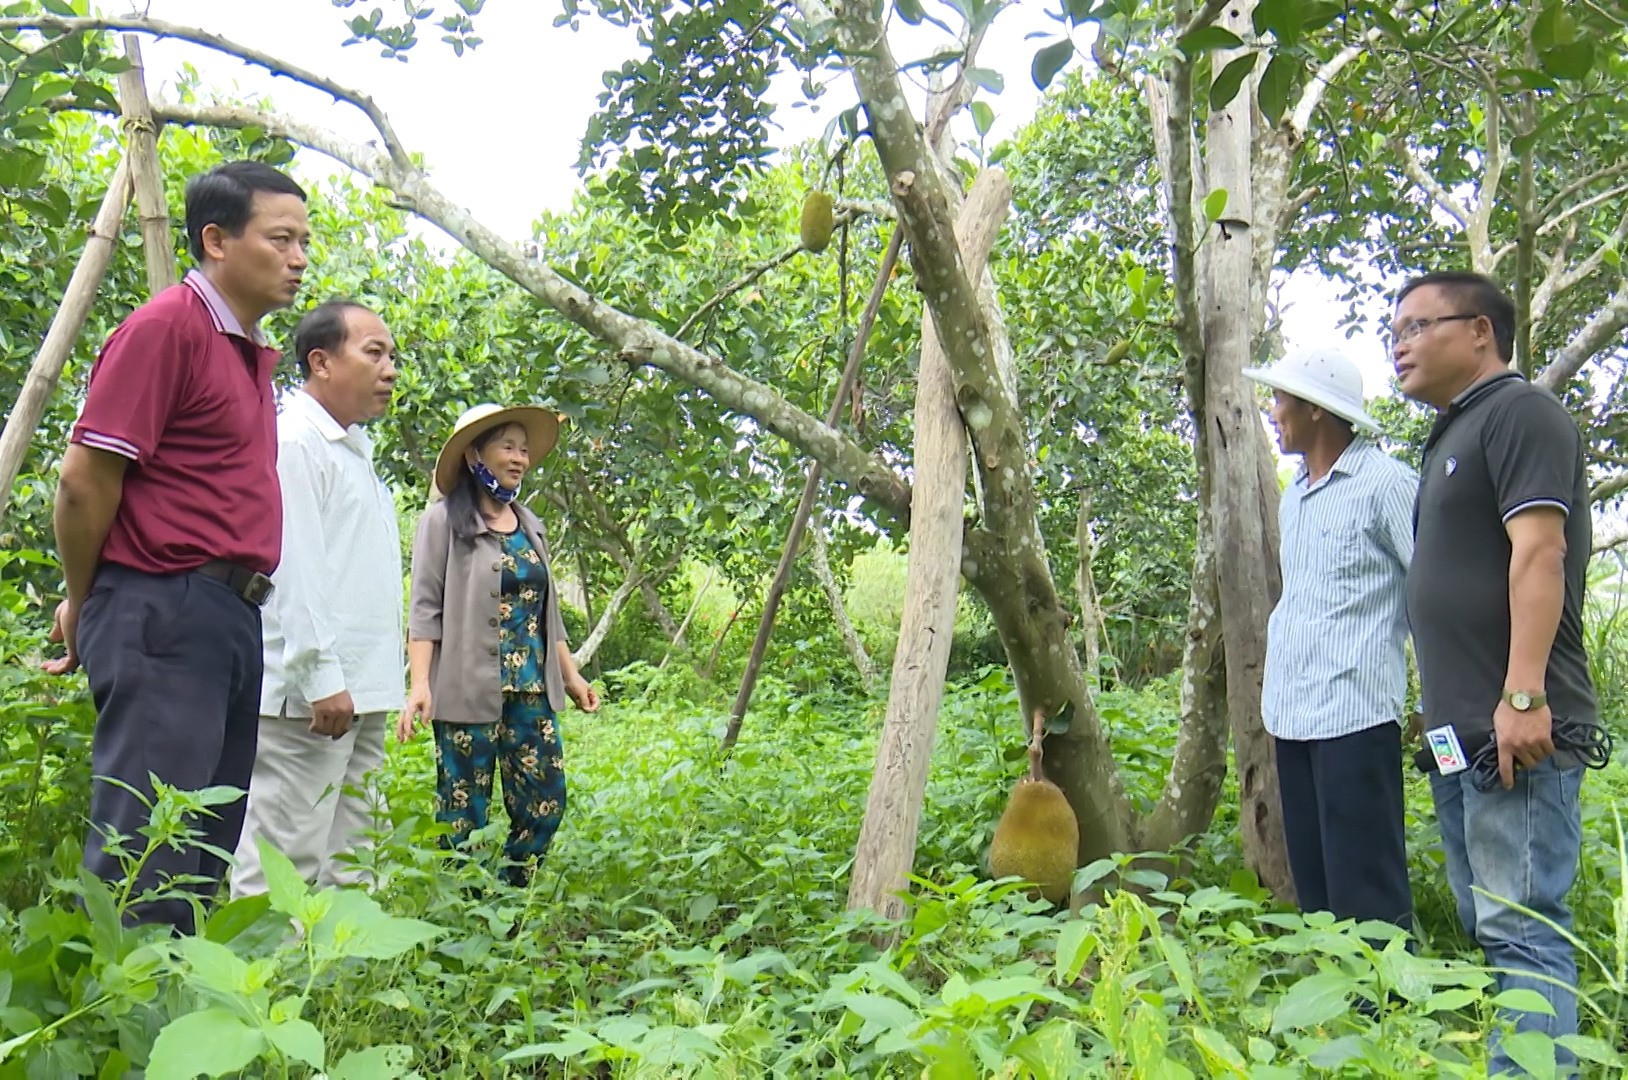 Vườn cây ăn quả của ông Nguyễn Thanh Hạt ở thôn Thái Chấn Sơn (Đại Hưng, Đại Lộc) cho thu nhập hằng năm gần 700 triệu đồng.